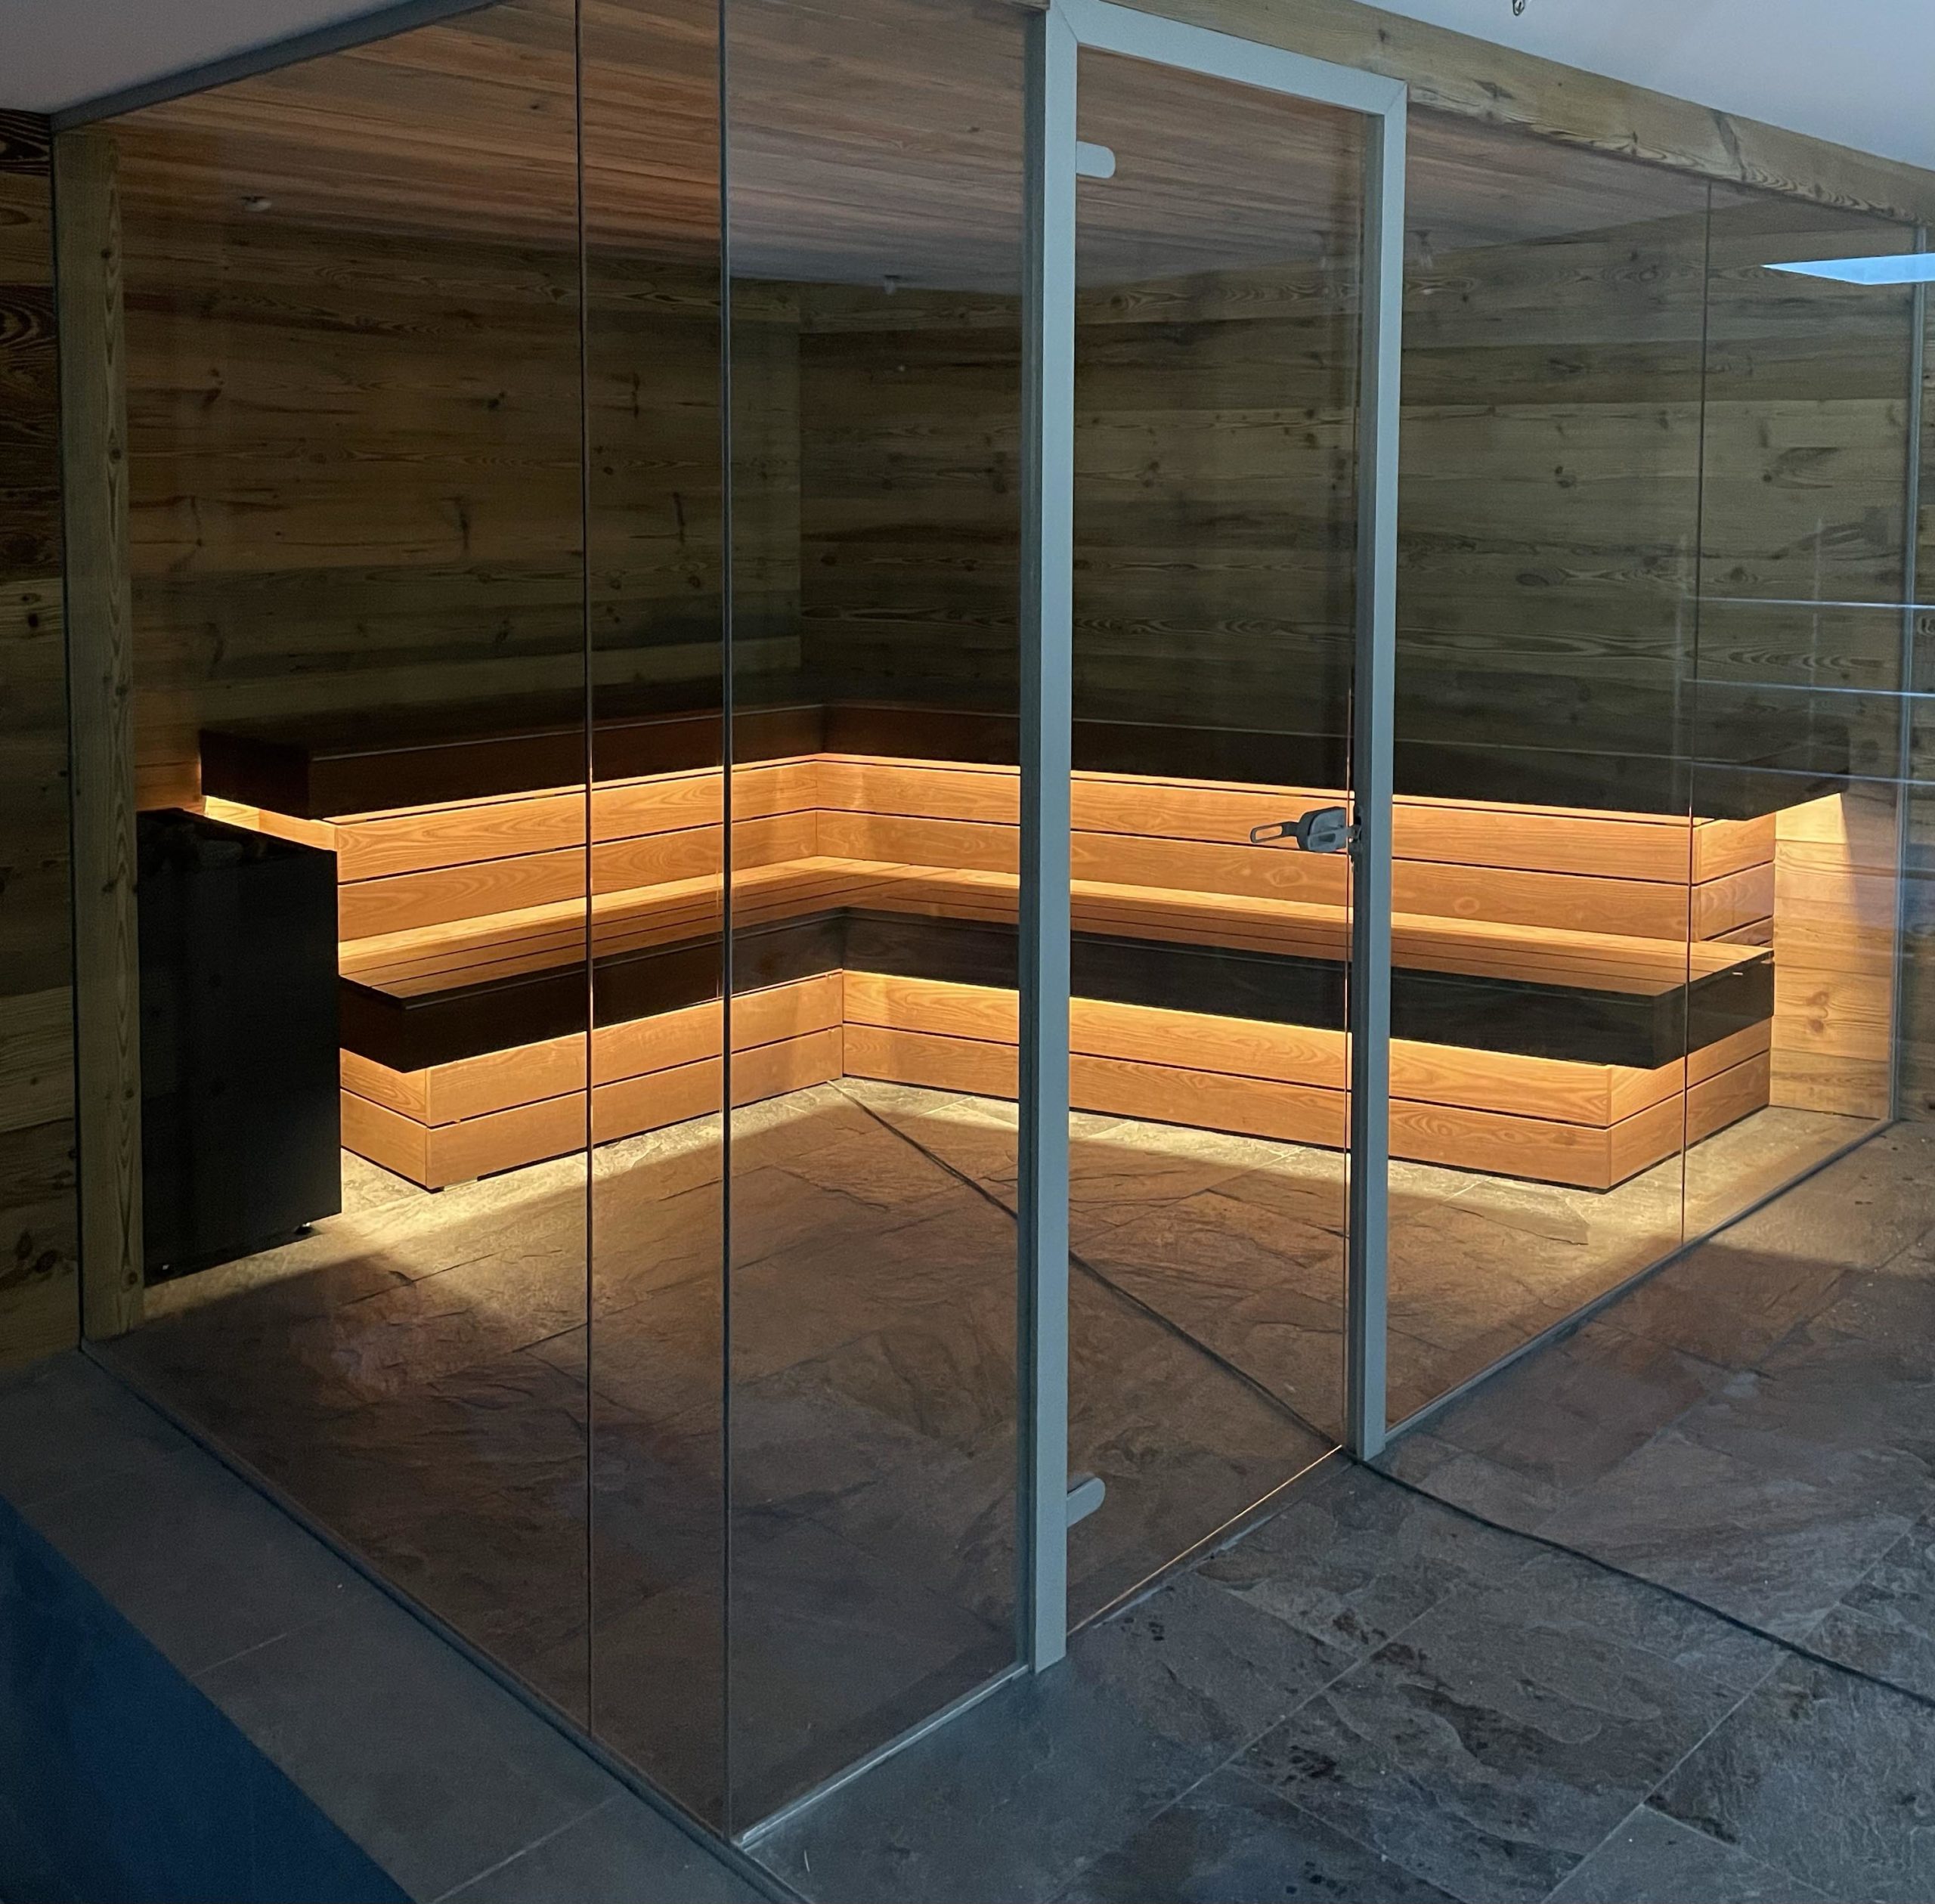 Le sauna à la pierre de sel et ses nombreux effets bénéfiques ! - FLOCON DE  NEIGE